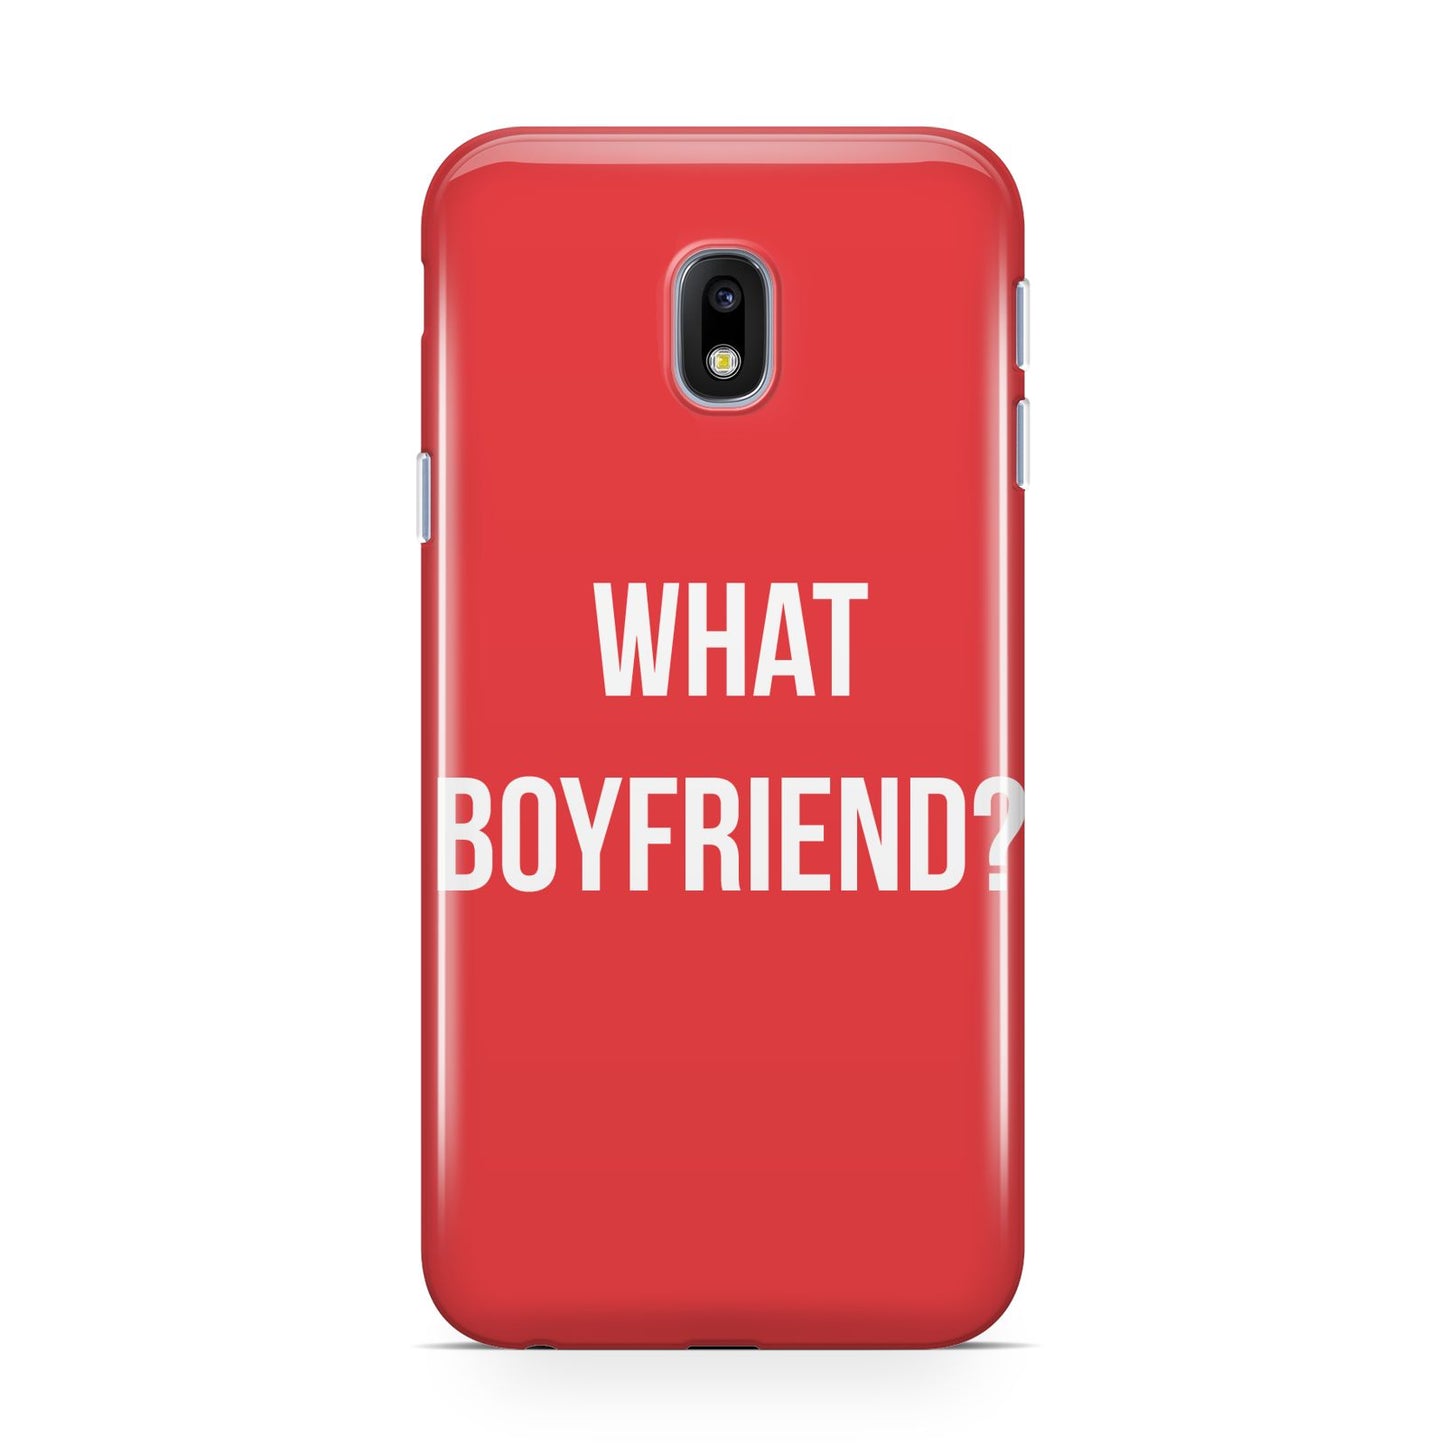 What Boyfriend Samsung Galaxy J3 2017 Case